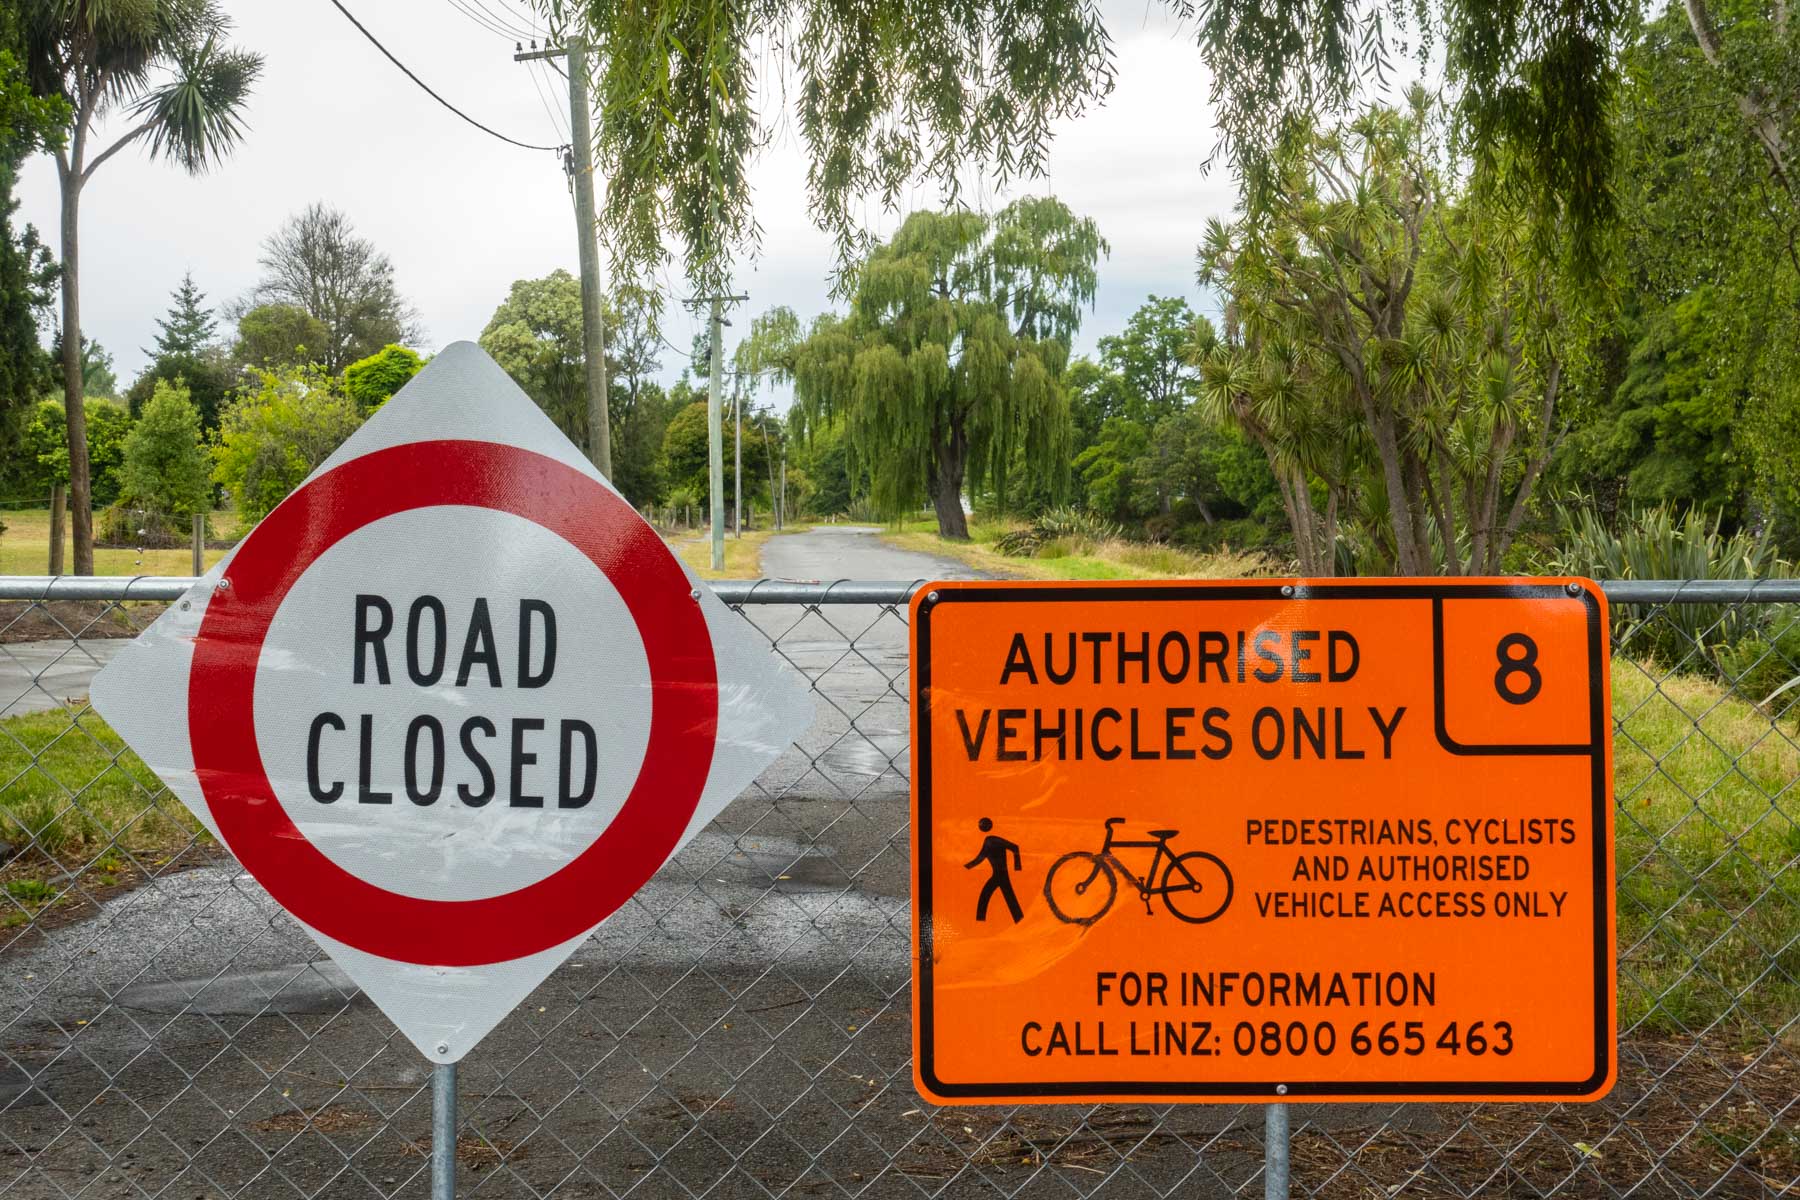 Sur une barrière grillagée, un panneau rouge et blanc indique que la route est fermée. Une pancarte orange précise aussi que les piétons, les vélos et les personnes autorisées peuvent circuler.